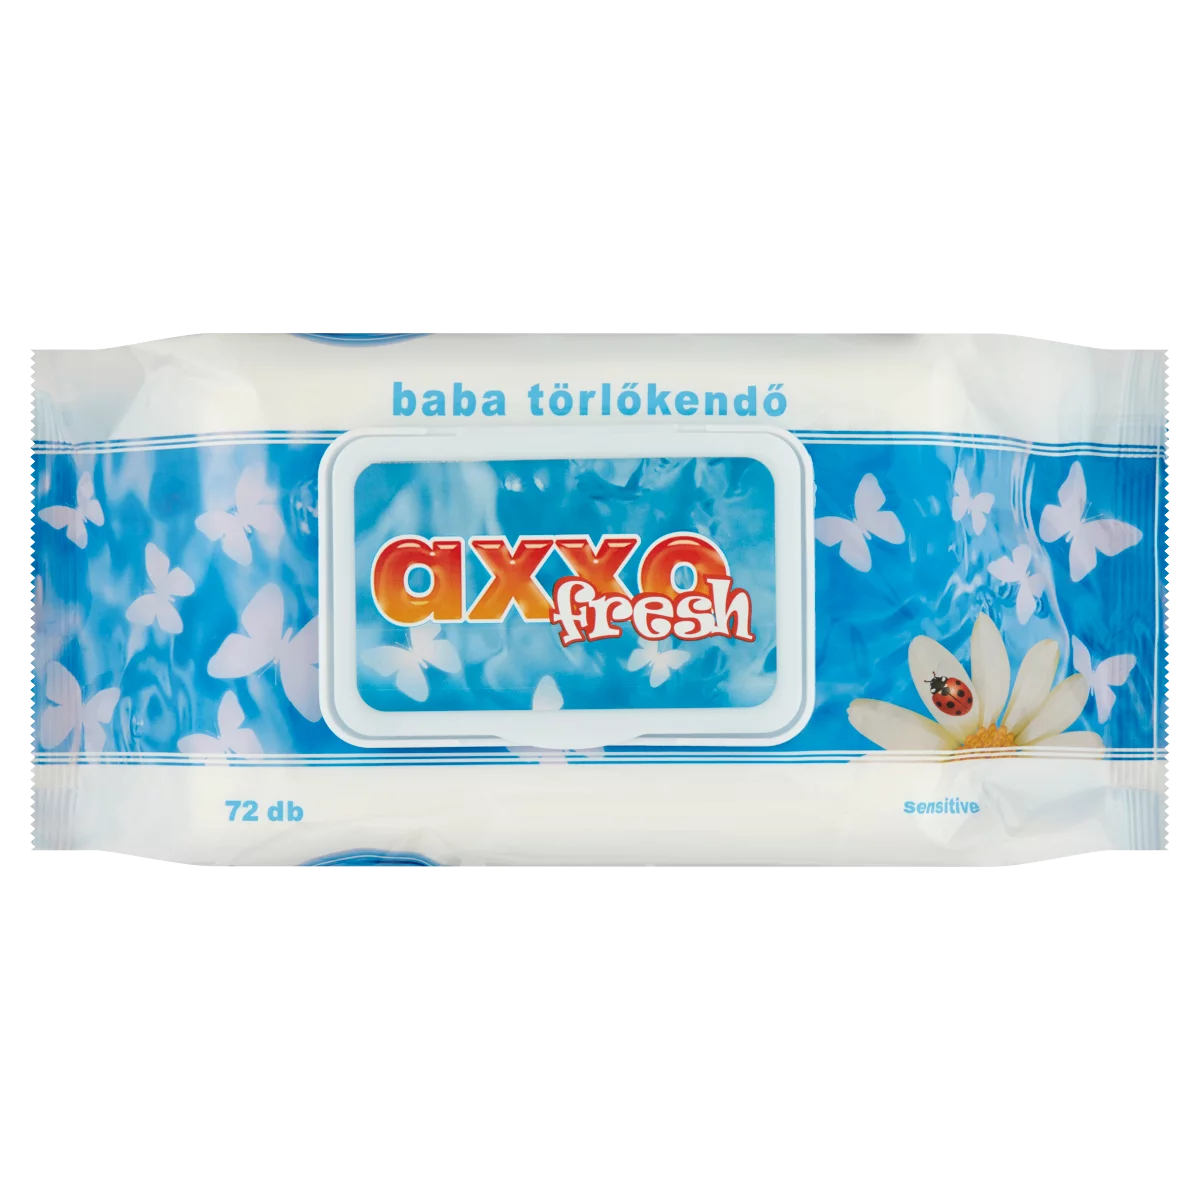 Axxo Fresh kamilla illatú baba törlőkendő 72 db